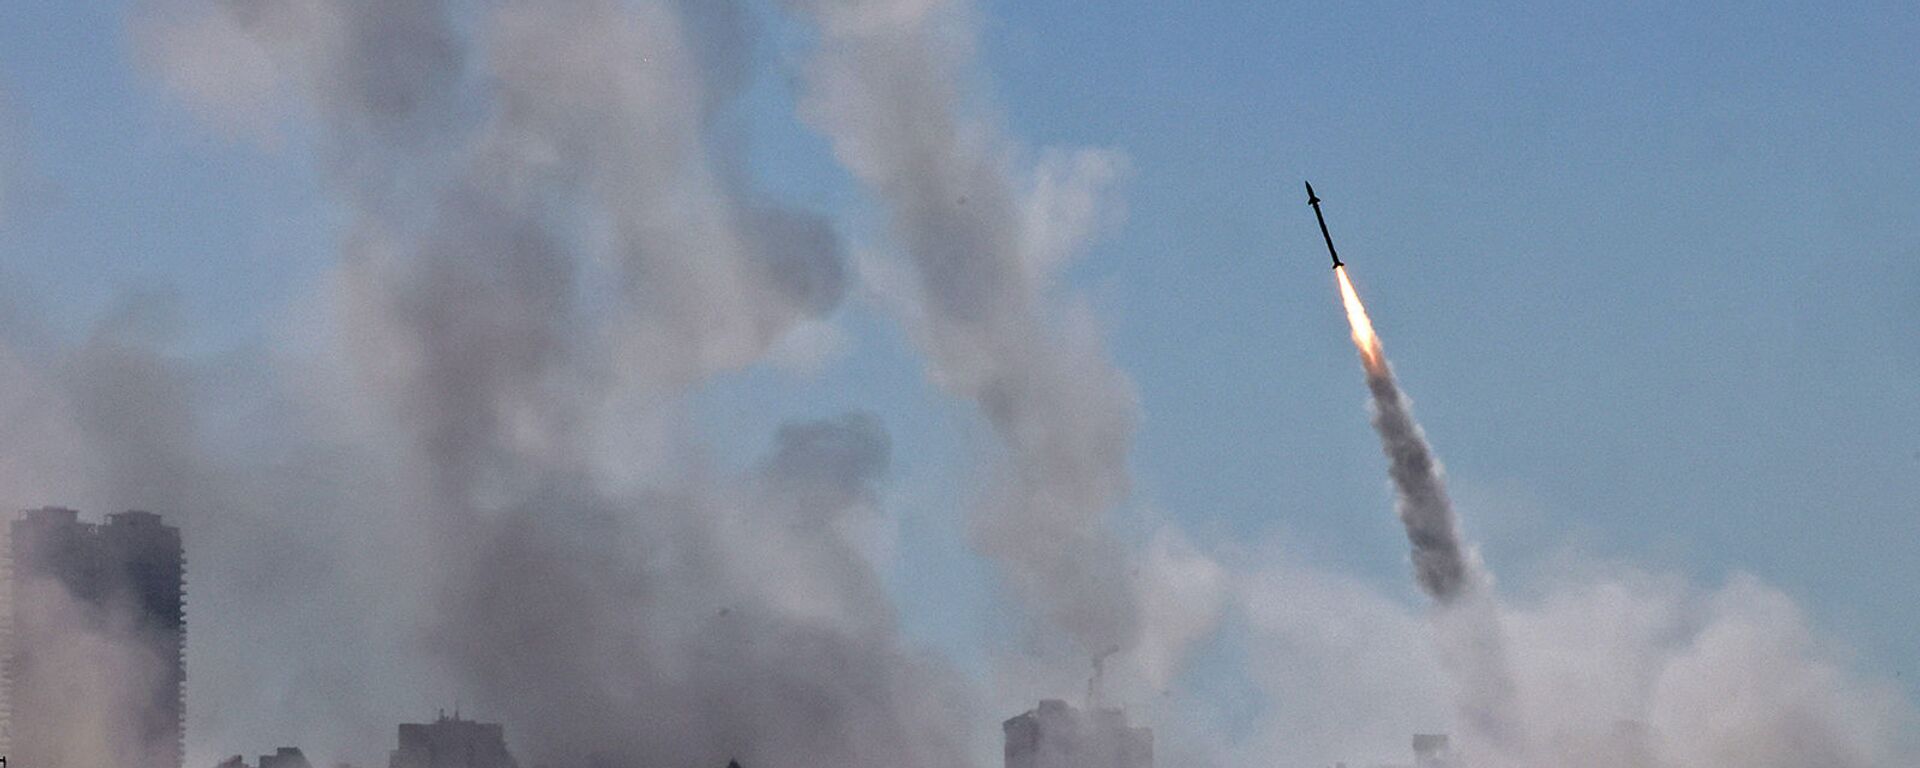 Система противовоздушной обороны Израиля Iron Dome активирована для перехвата ракеты, запущенной из сектора Газа, контролируемого палестинским движением ХАМАС (12 мая 2021). Ашдод - Sputnik Армения, 1920, 17.05.2021